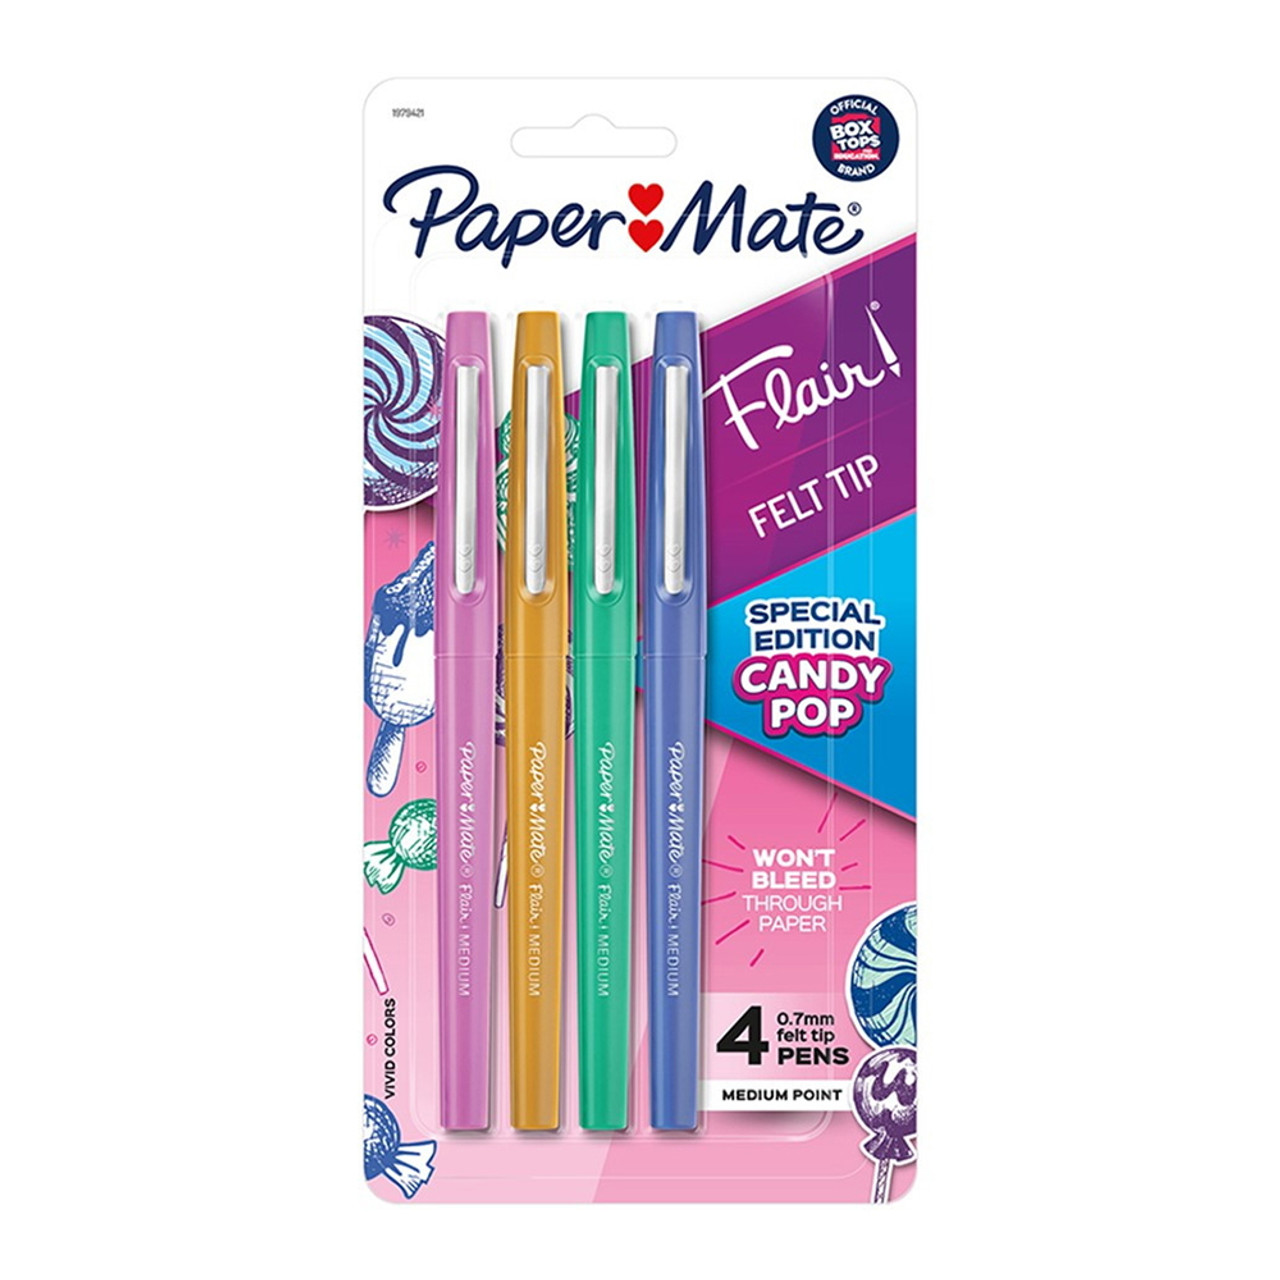 Paper Mate Flair Medium Point Guard Felt Tip Pens No Bleed Assorted Colors  20 Pk